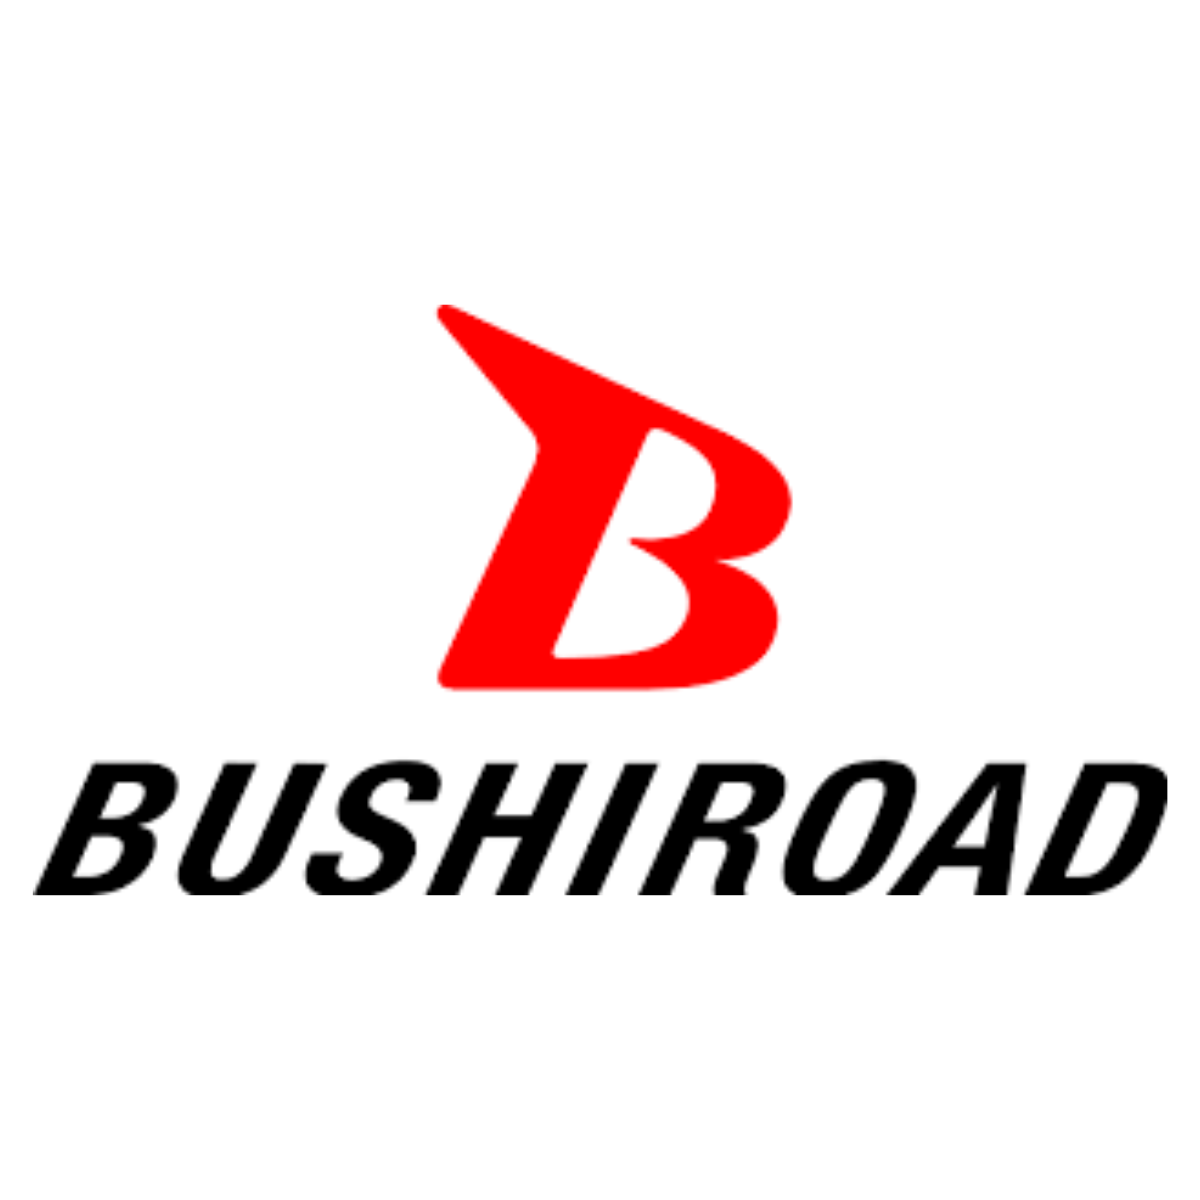 Bushiroad Sleeve Collection - Oshi No Ko Part.2 (Vol.3999)-Bushiroad-Ace Cards &amp; Collectibles